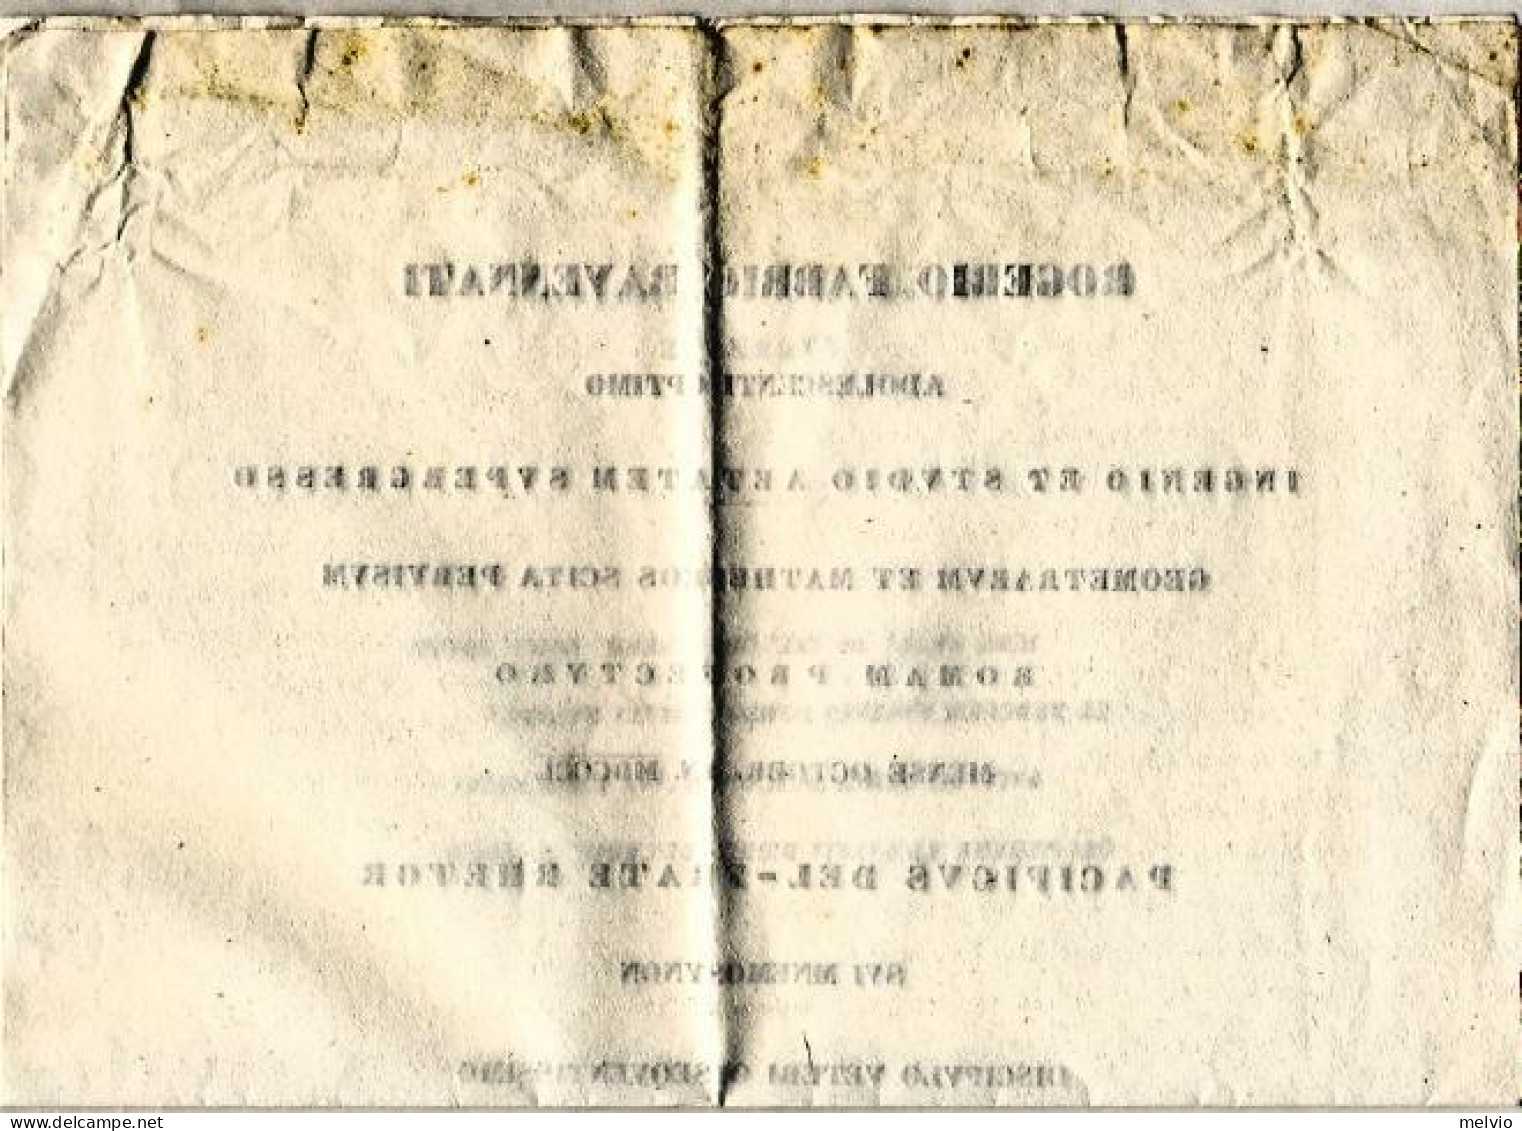 1850-diploma Rilasciato A Rogerio Fabrio Ravennate - Diploma's En Schoolrapporten